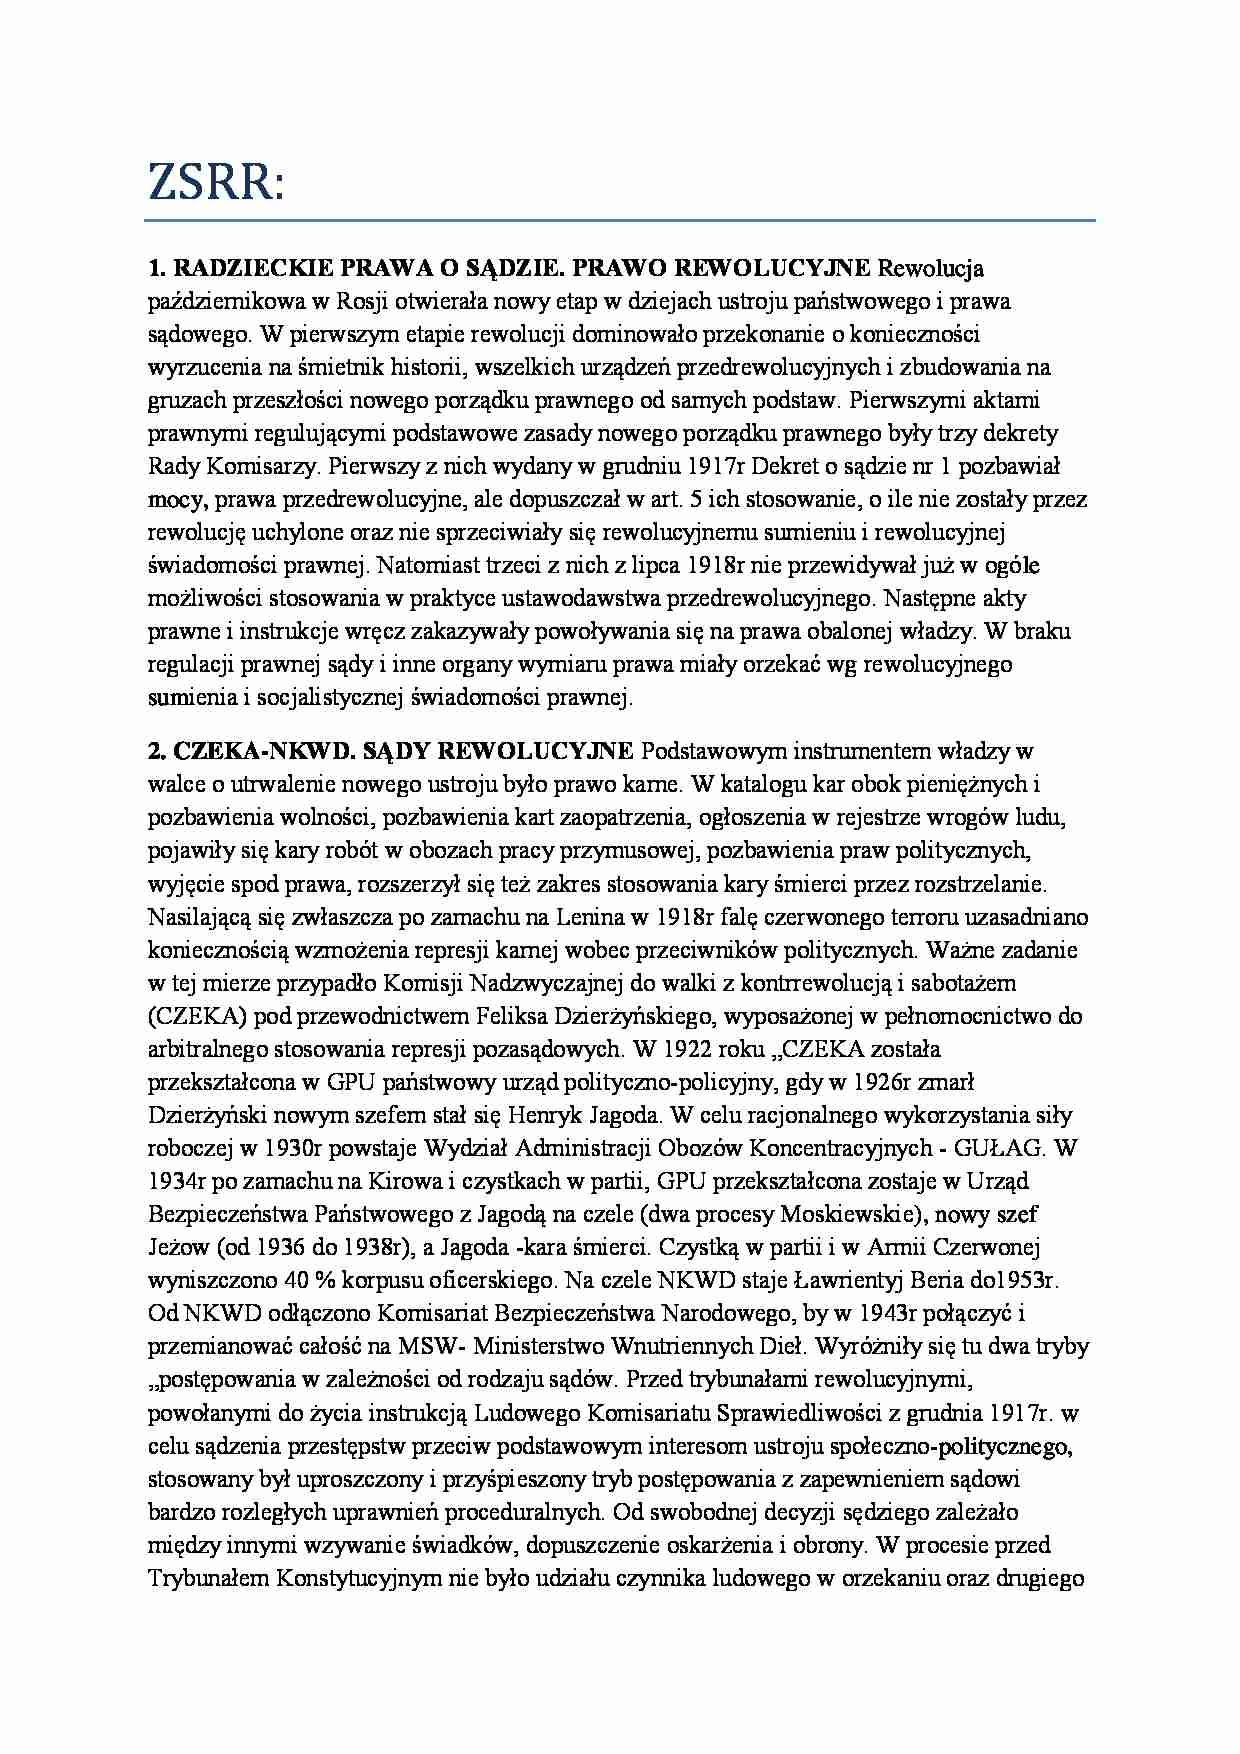 Historia państwa i prawa polskiego - ZSRR - strona 1